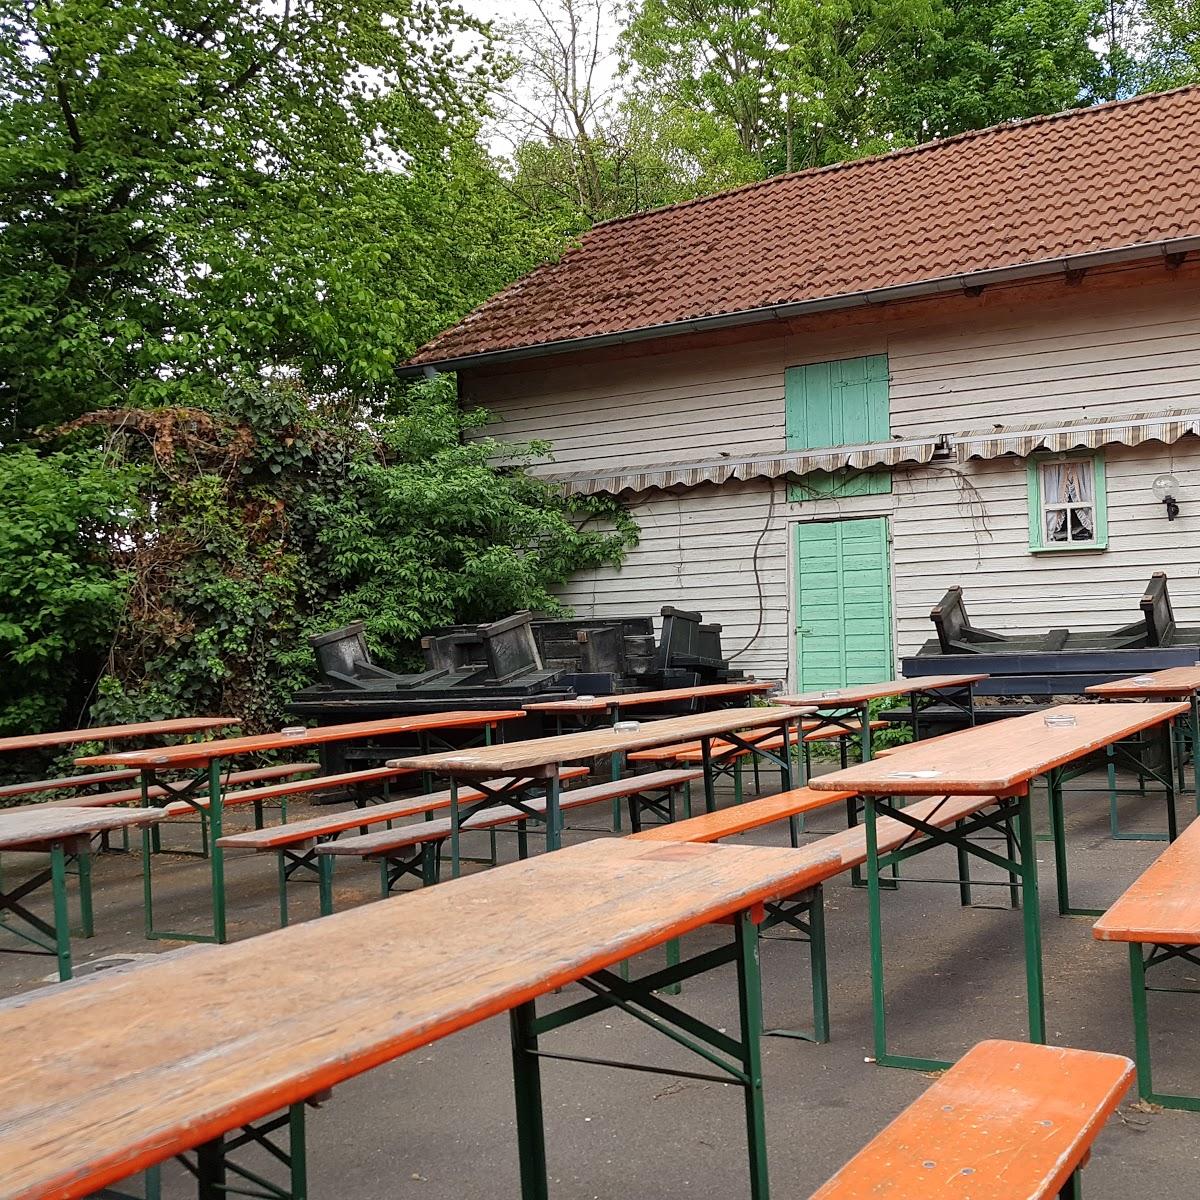 Restaurant "Falltorhaus  Mototreff" in  Schotten